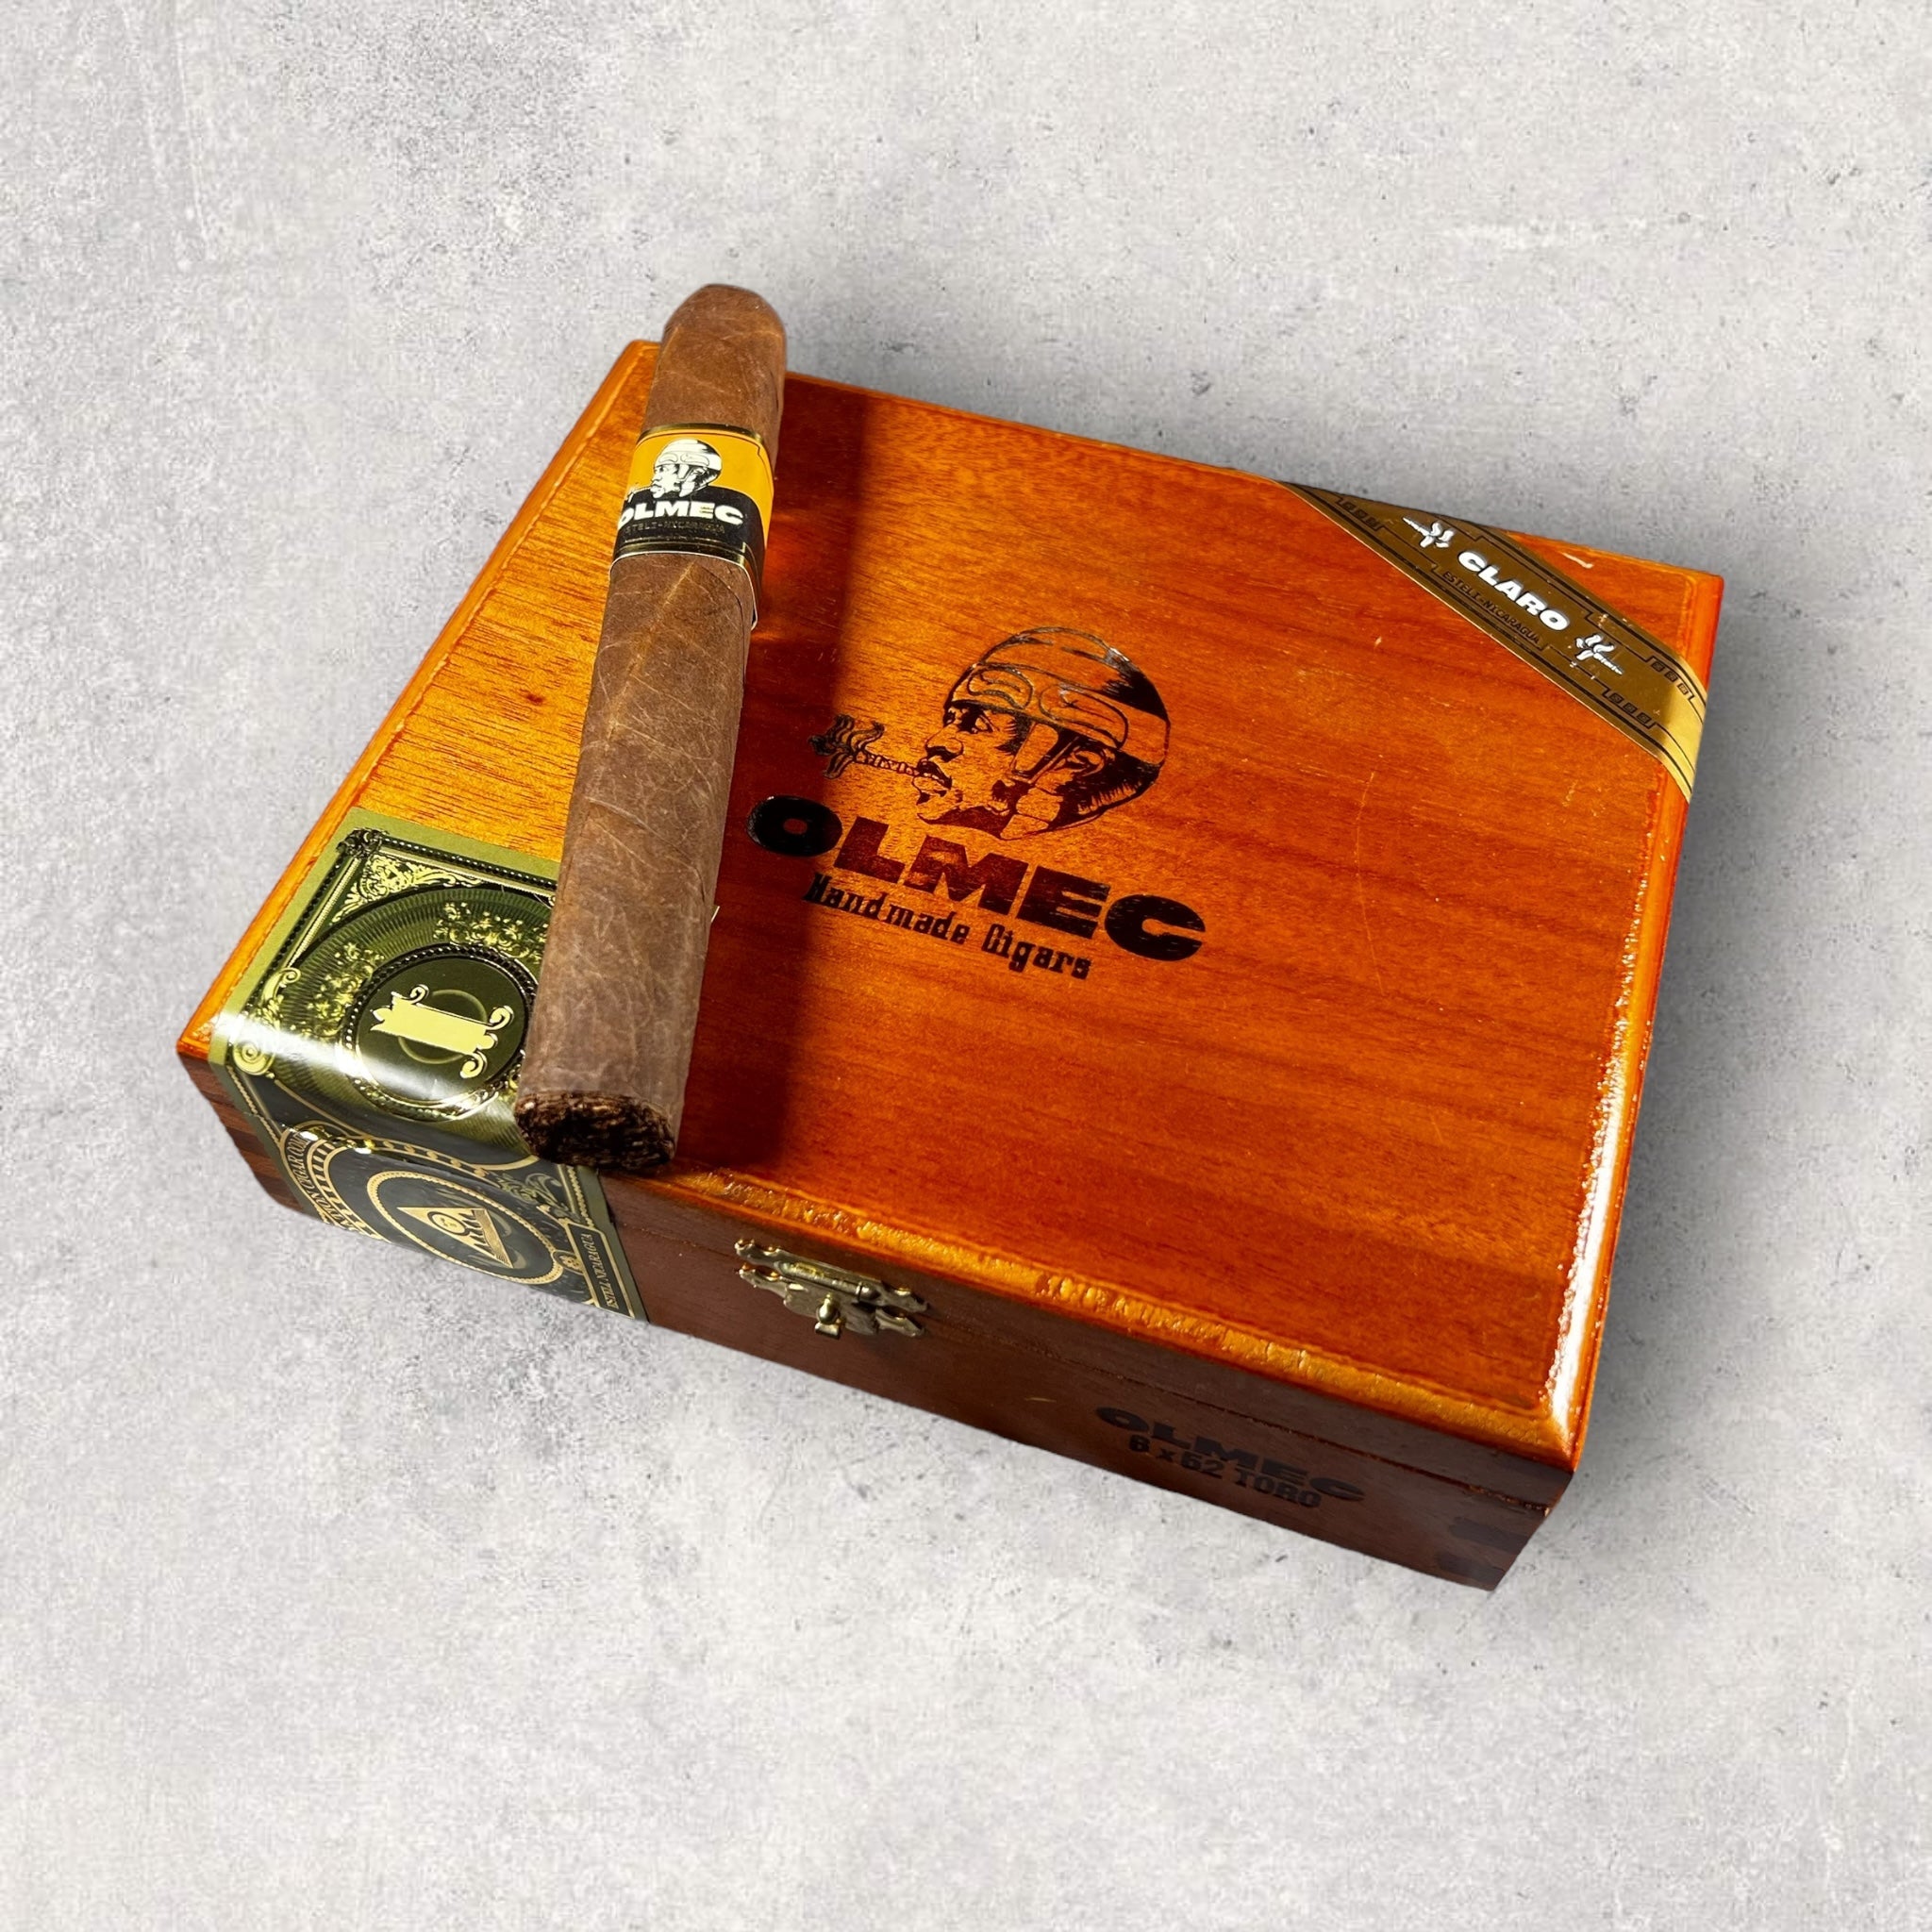 Foundation Olmec Claro Toro - Cigar 30